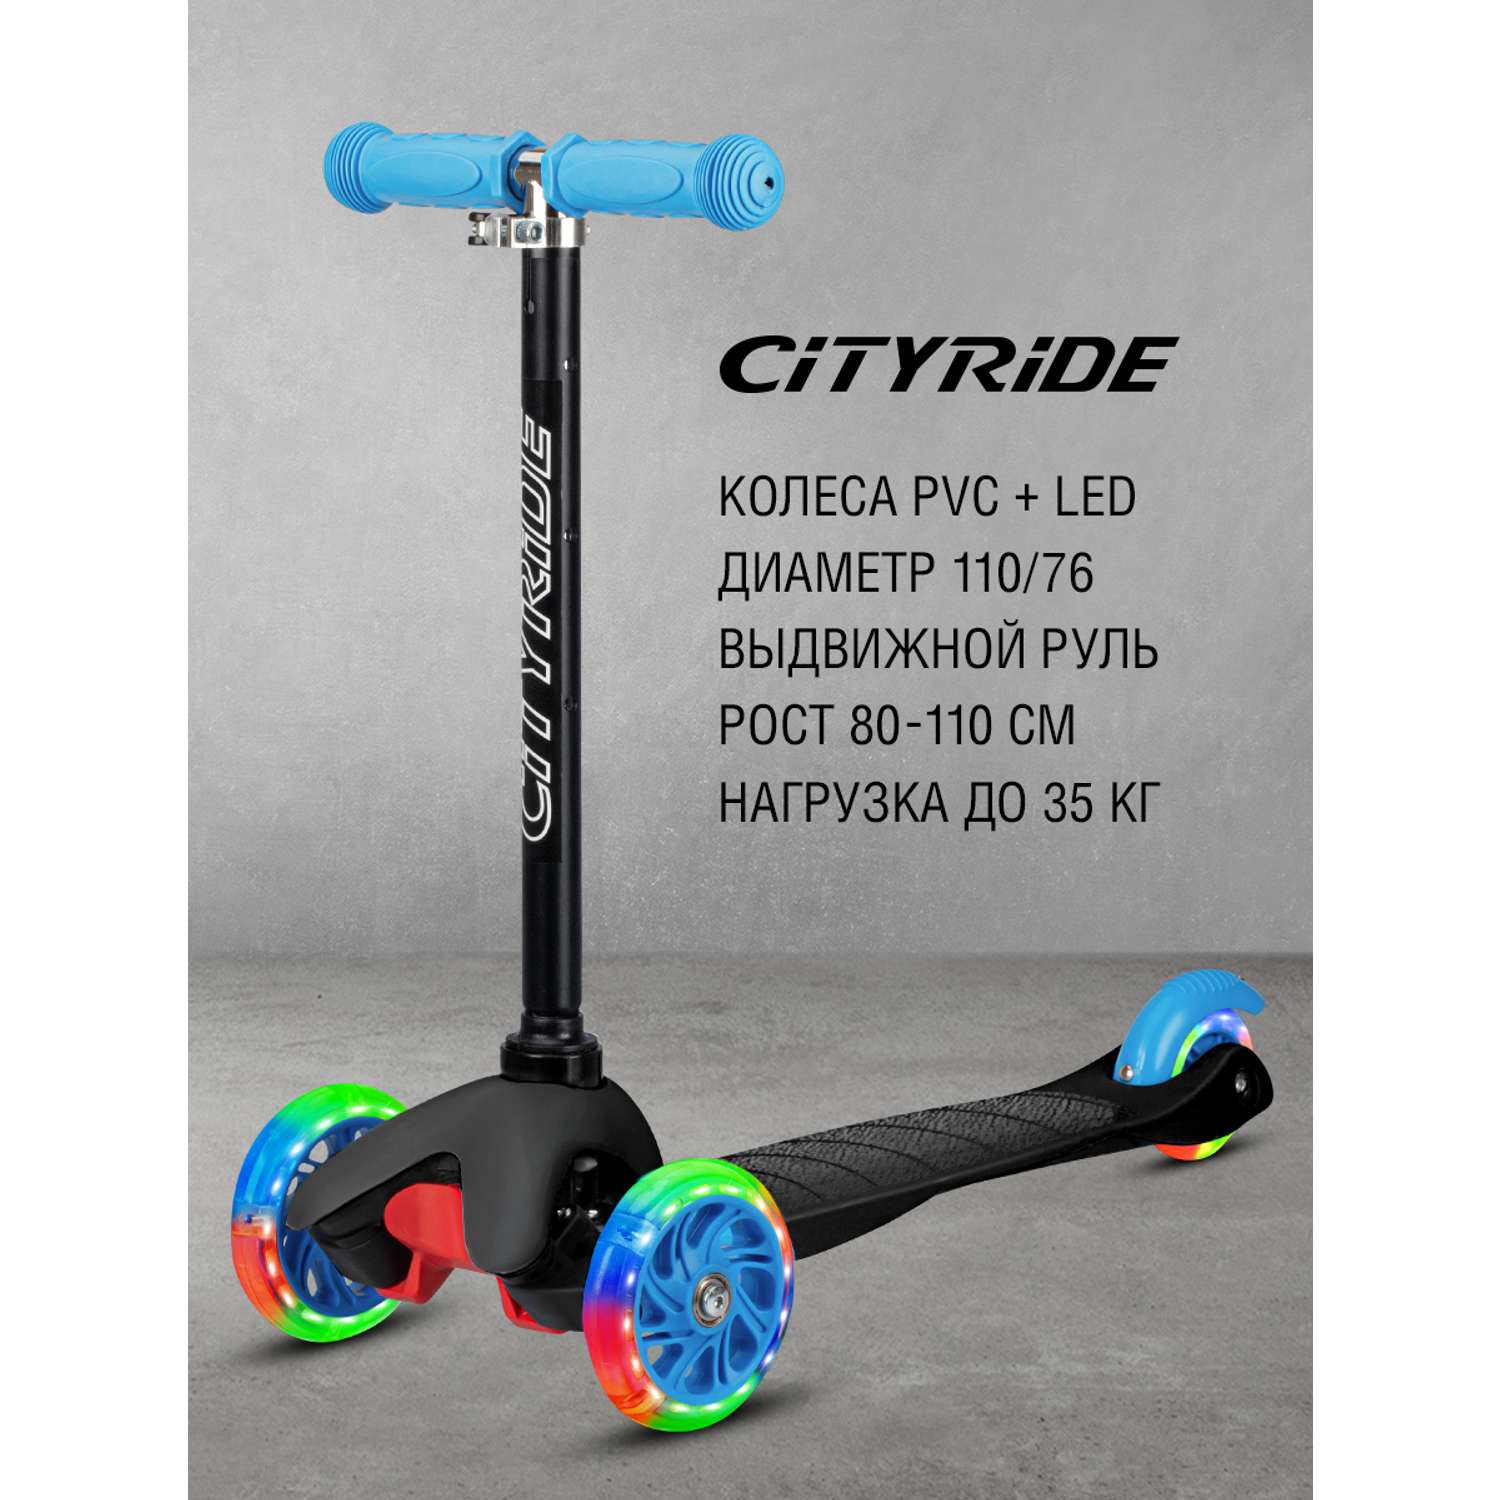 Самокат детский CITYRIDE трехколесный xd4 с телескопическим рулем дека PP+нейлон колеса PVC 110/76 с подсветкой - фото 1